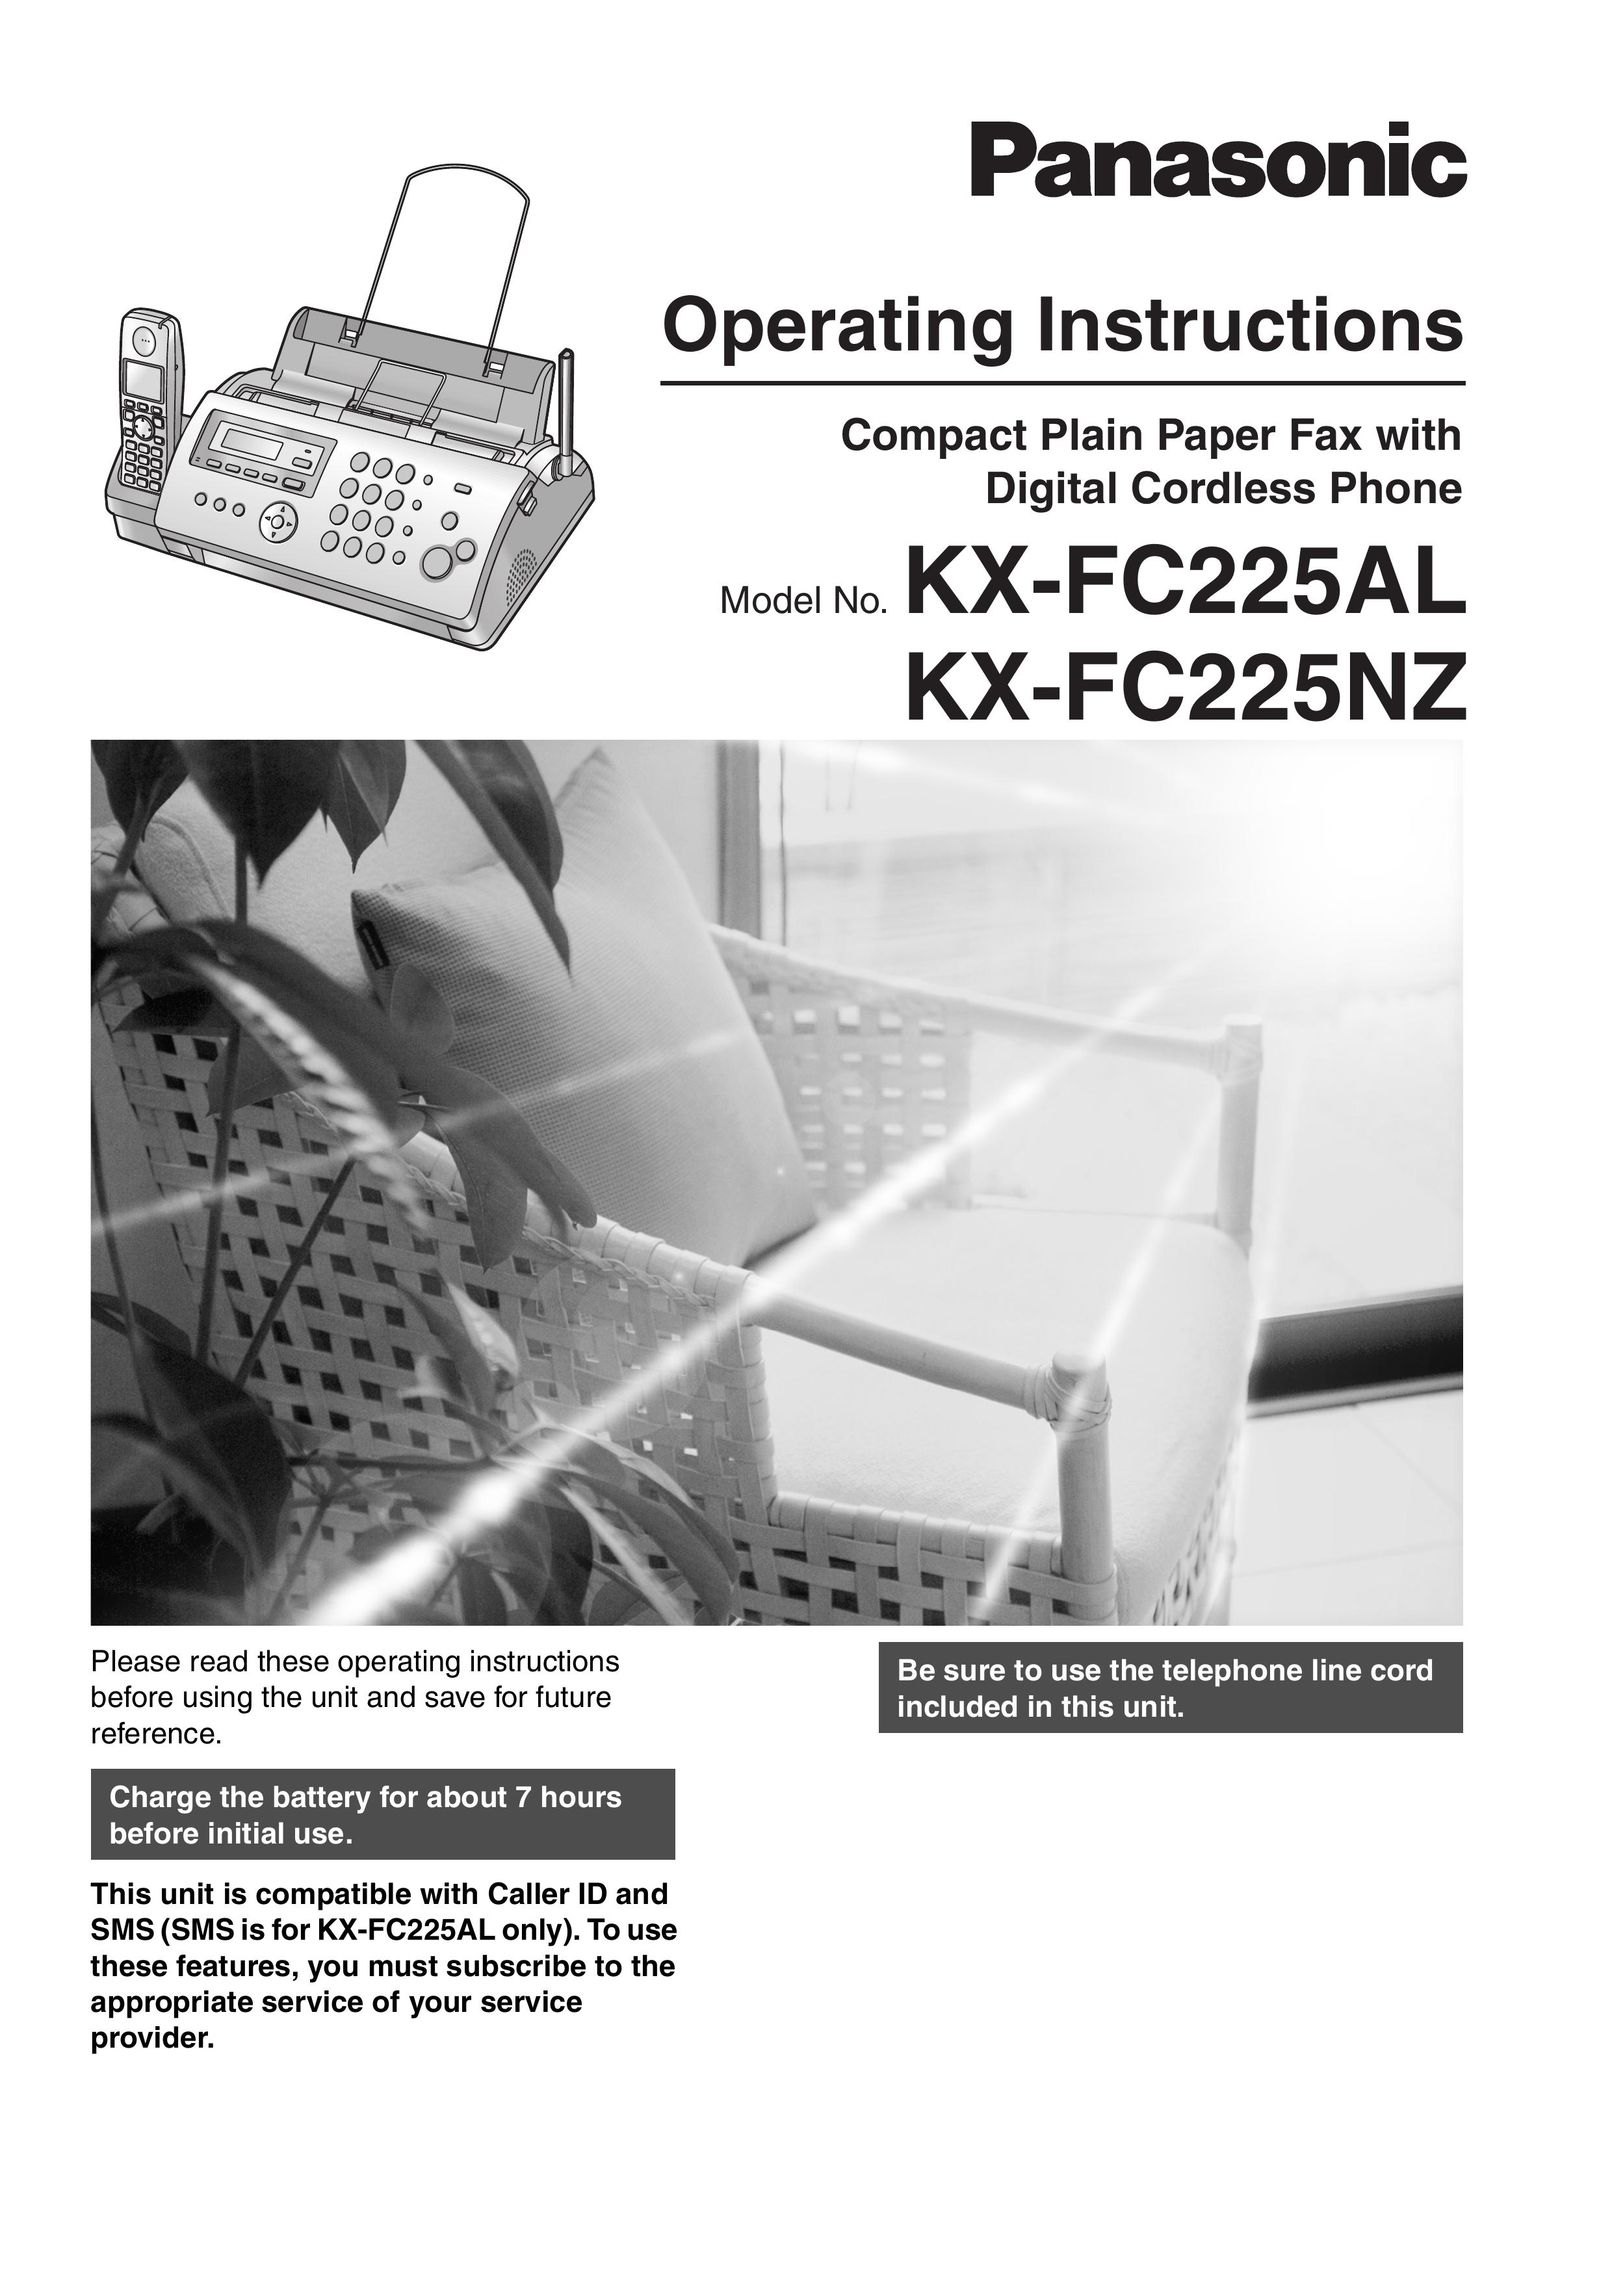 Panasonic KX-FC225NZ Fax Machine User Manual